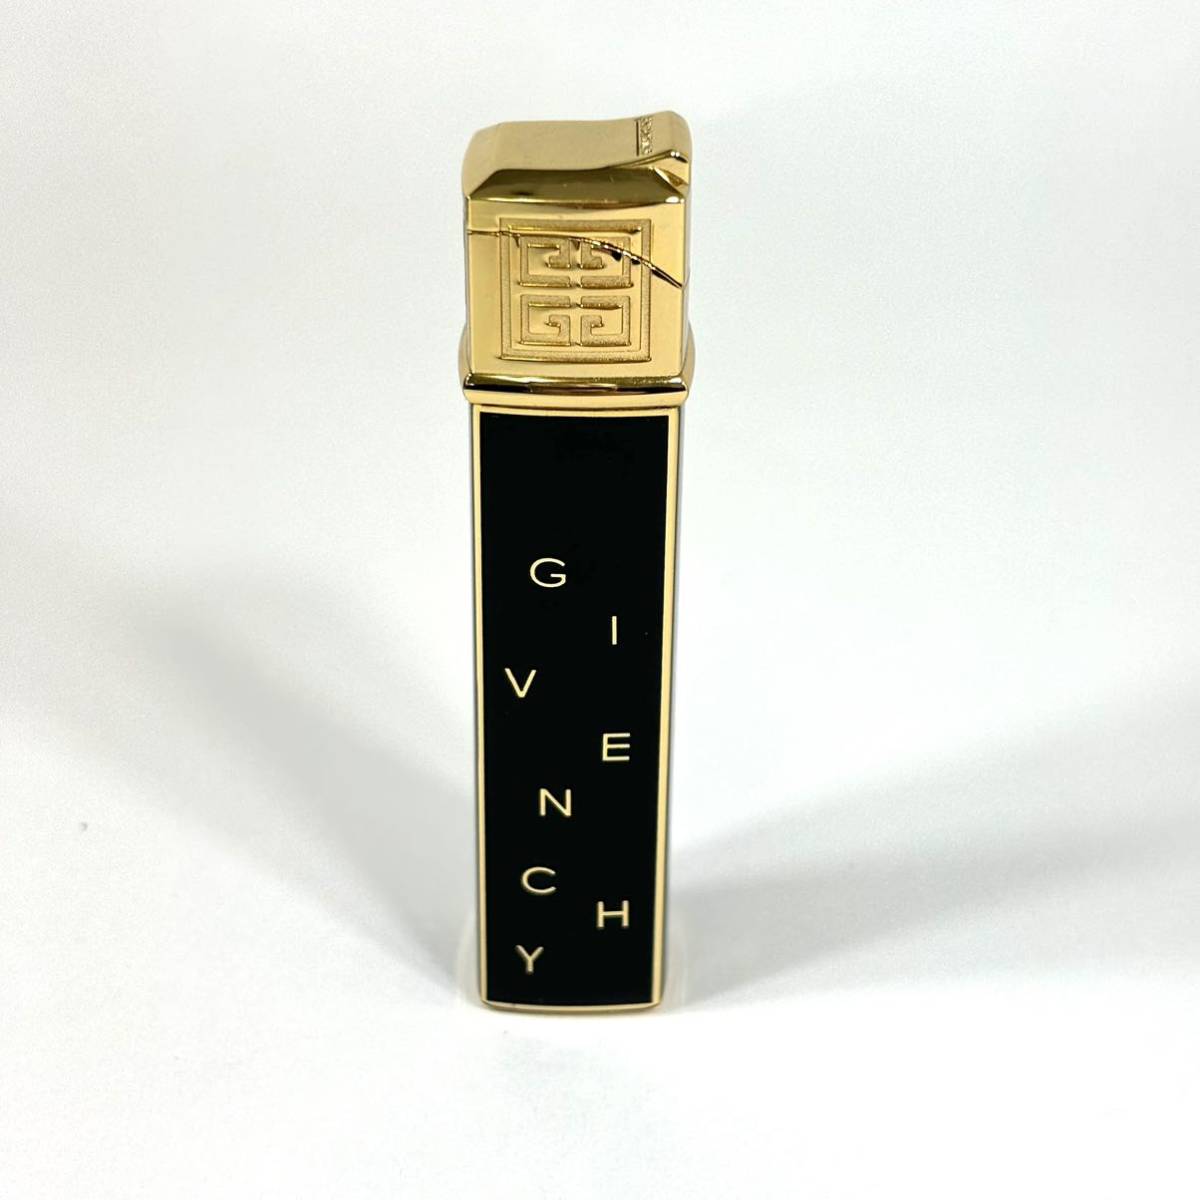 * дешевый *GIVENCHY зажигалка Givenchy курение . надеты огонь не работоспособность не проверялась Vintage Gold черный NT